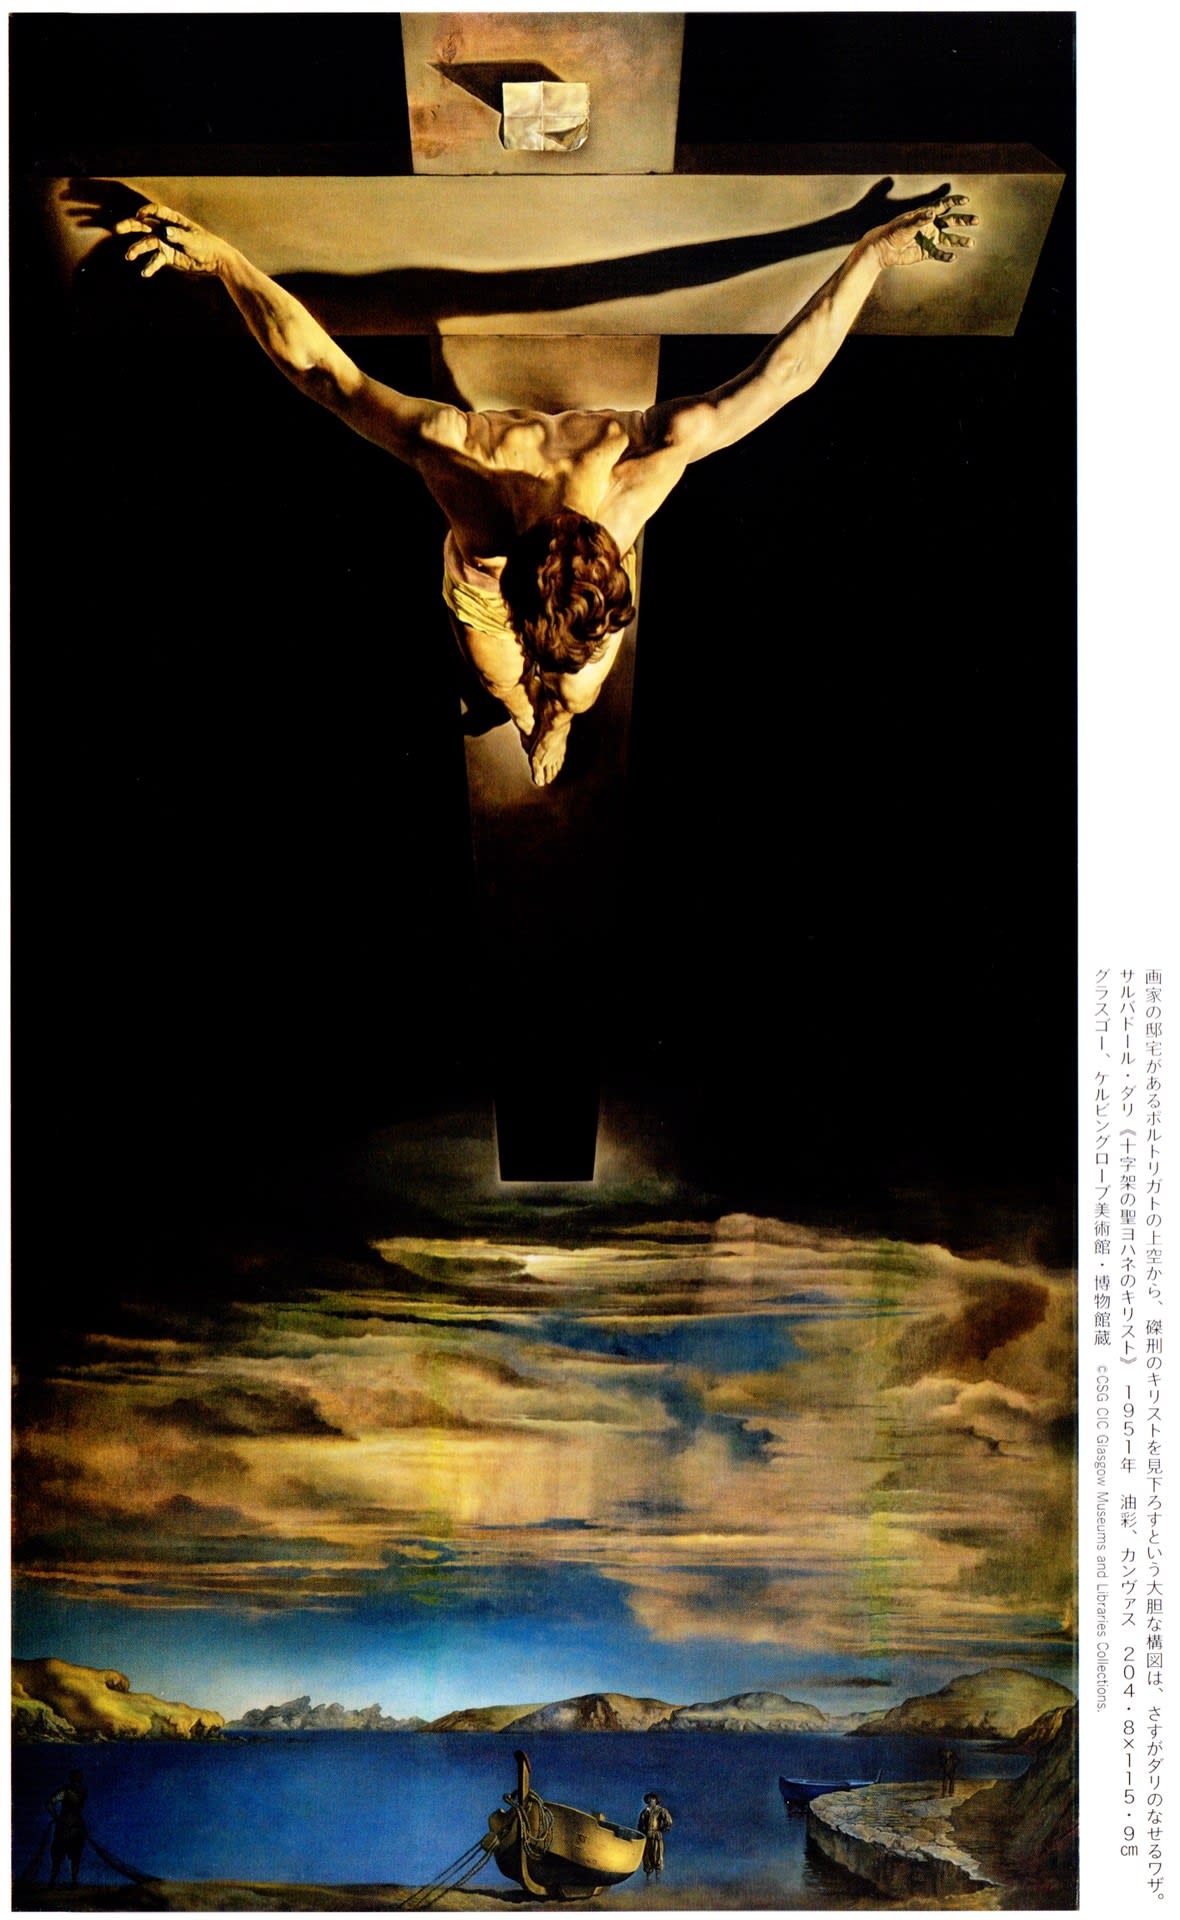 イエスの血の十字架 ベクターイラスト画像とPNGフリー素材透過の無料ダウンロード - Pngtree